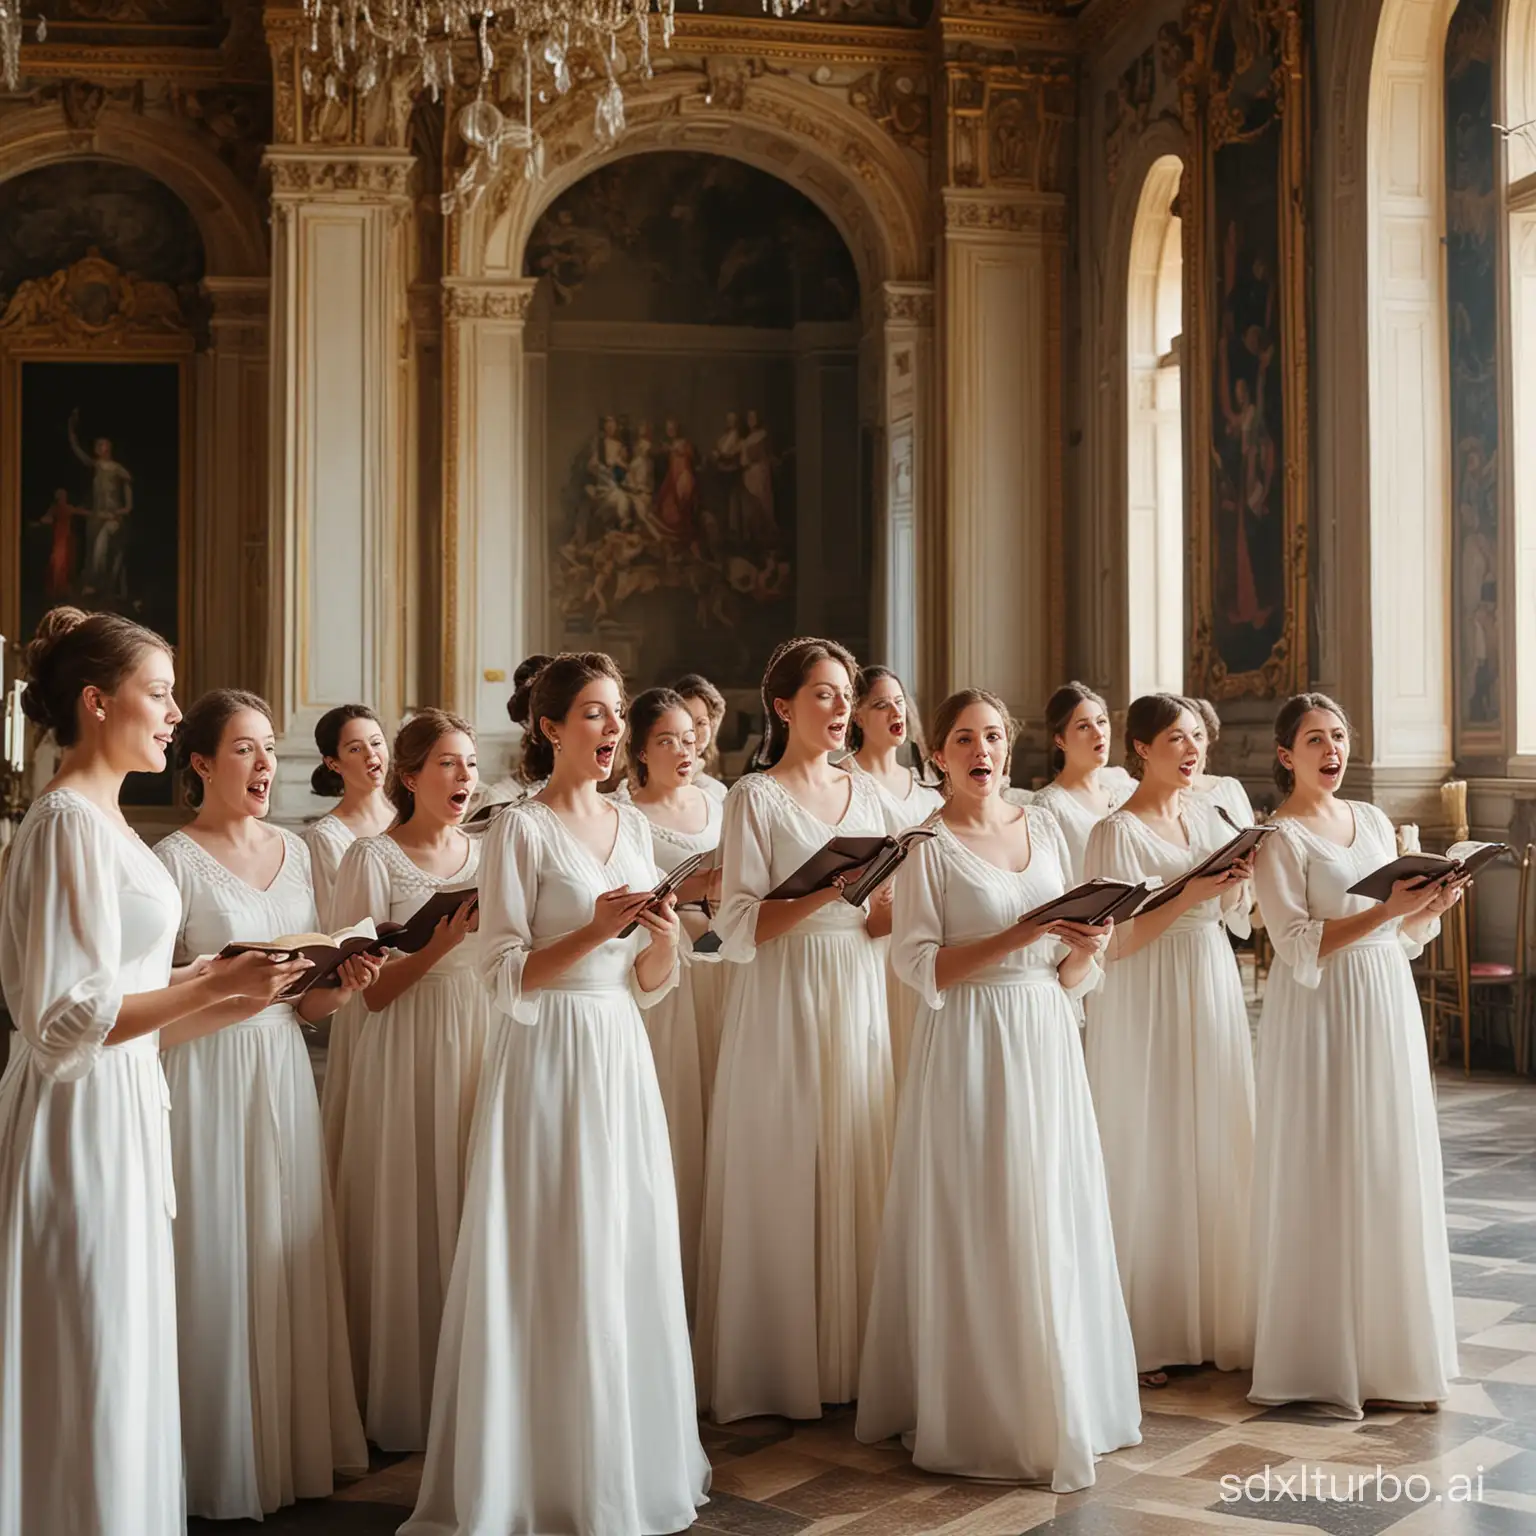 Elegant-Women-Chorus-in-Majestic-Palace-Captivating-Photography